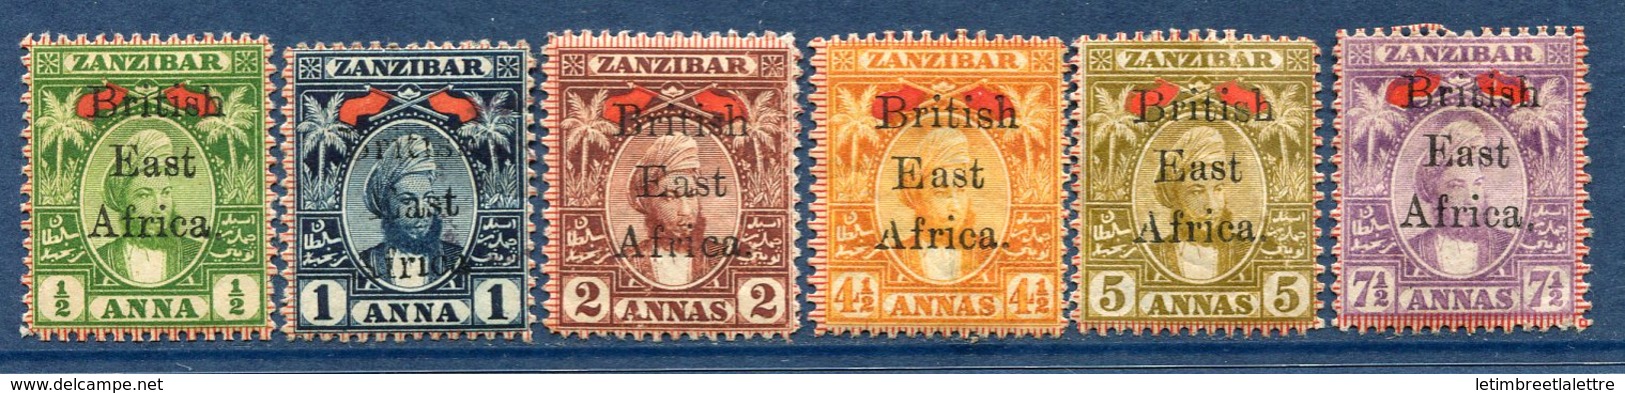 ⭐ Afrique Orientale Britannique - YT N° 84 à 89 * - Neuf Avec Charnière - ( Issus De La Série N° 84 à 91 ) ⭐ - British East Africa